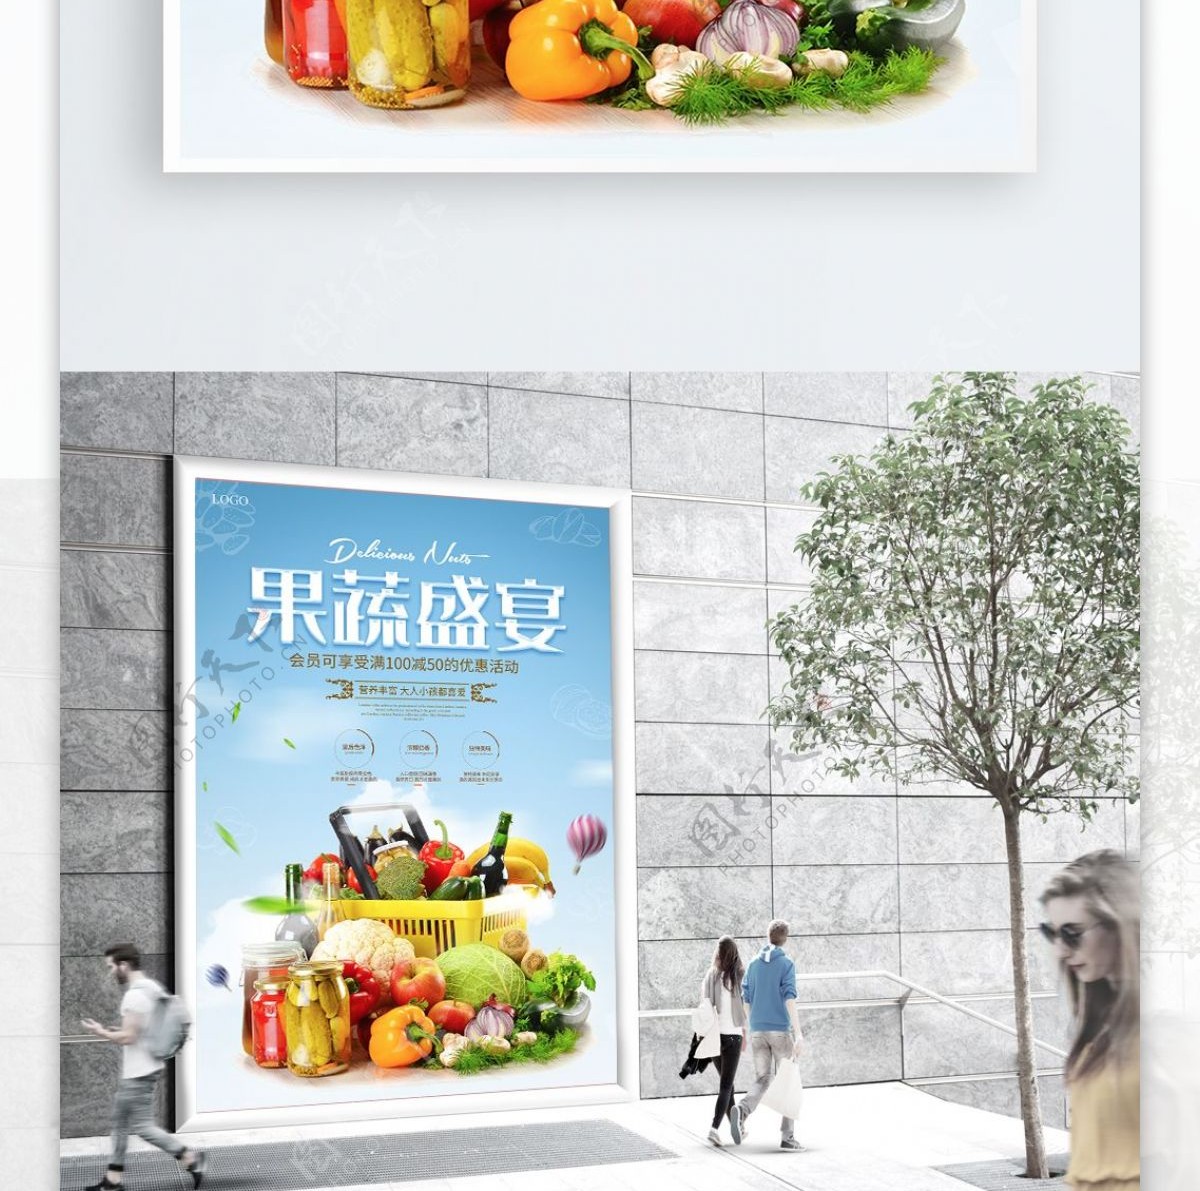 水果蔬菜食品促销海报